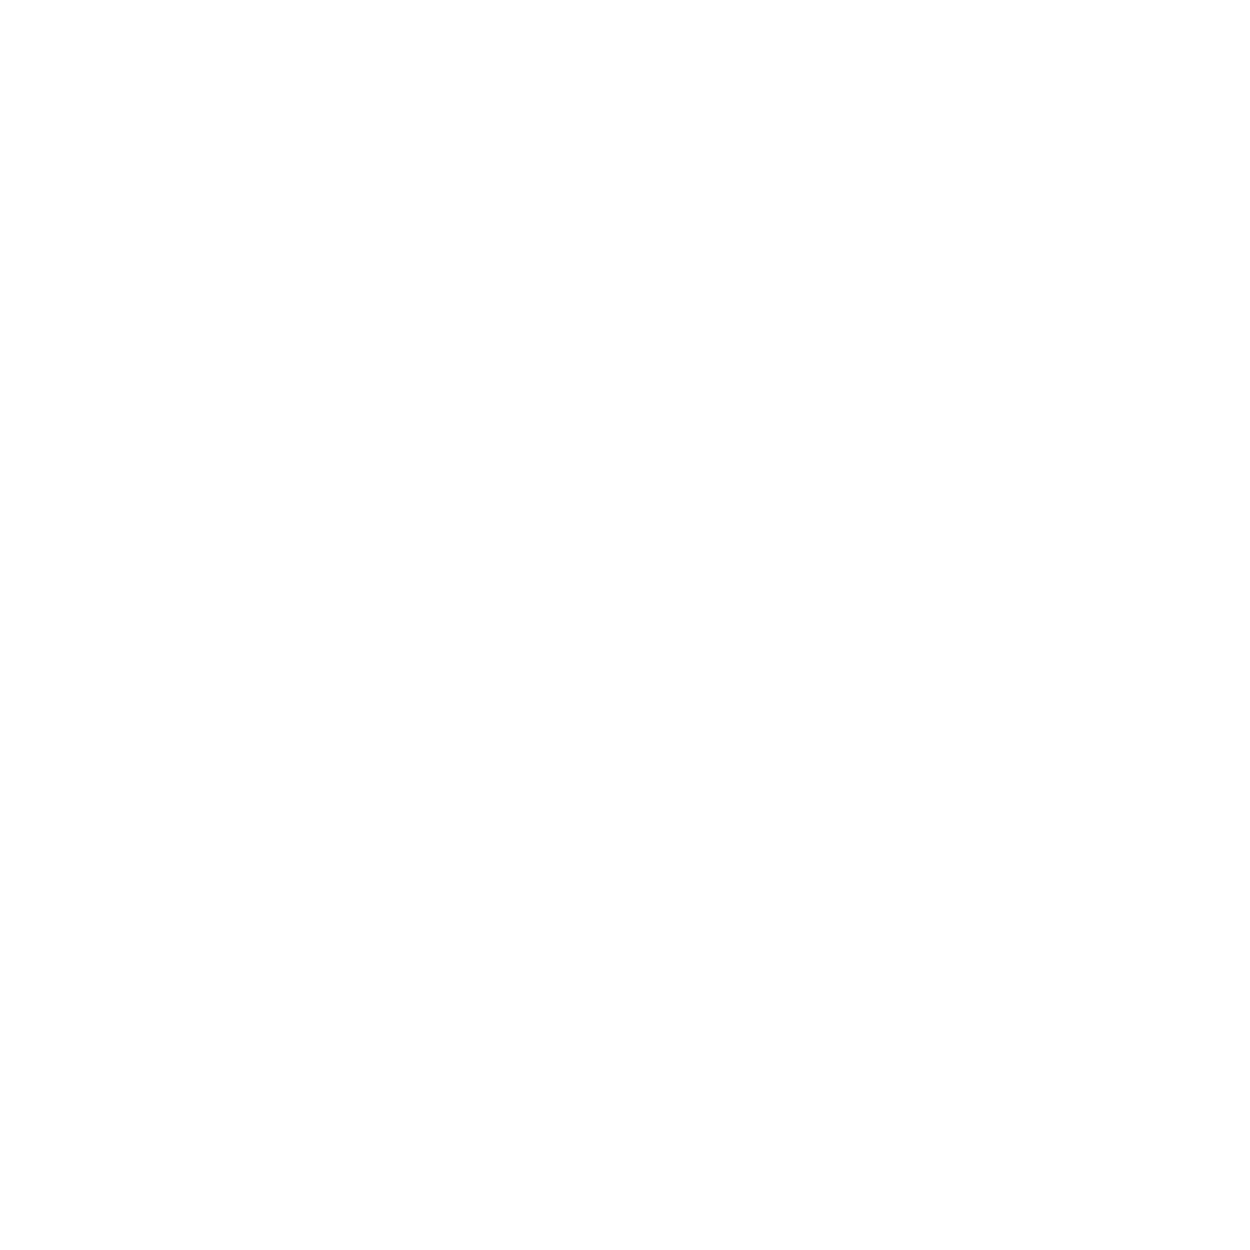 TAIWAN TAKISAWA TECHNOLOGY CO., LTD.